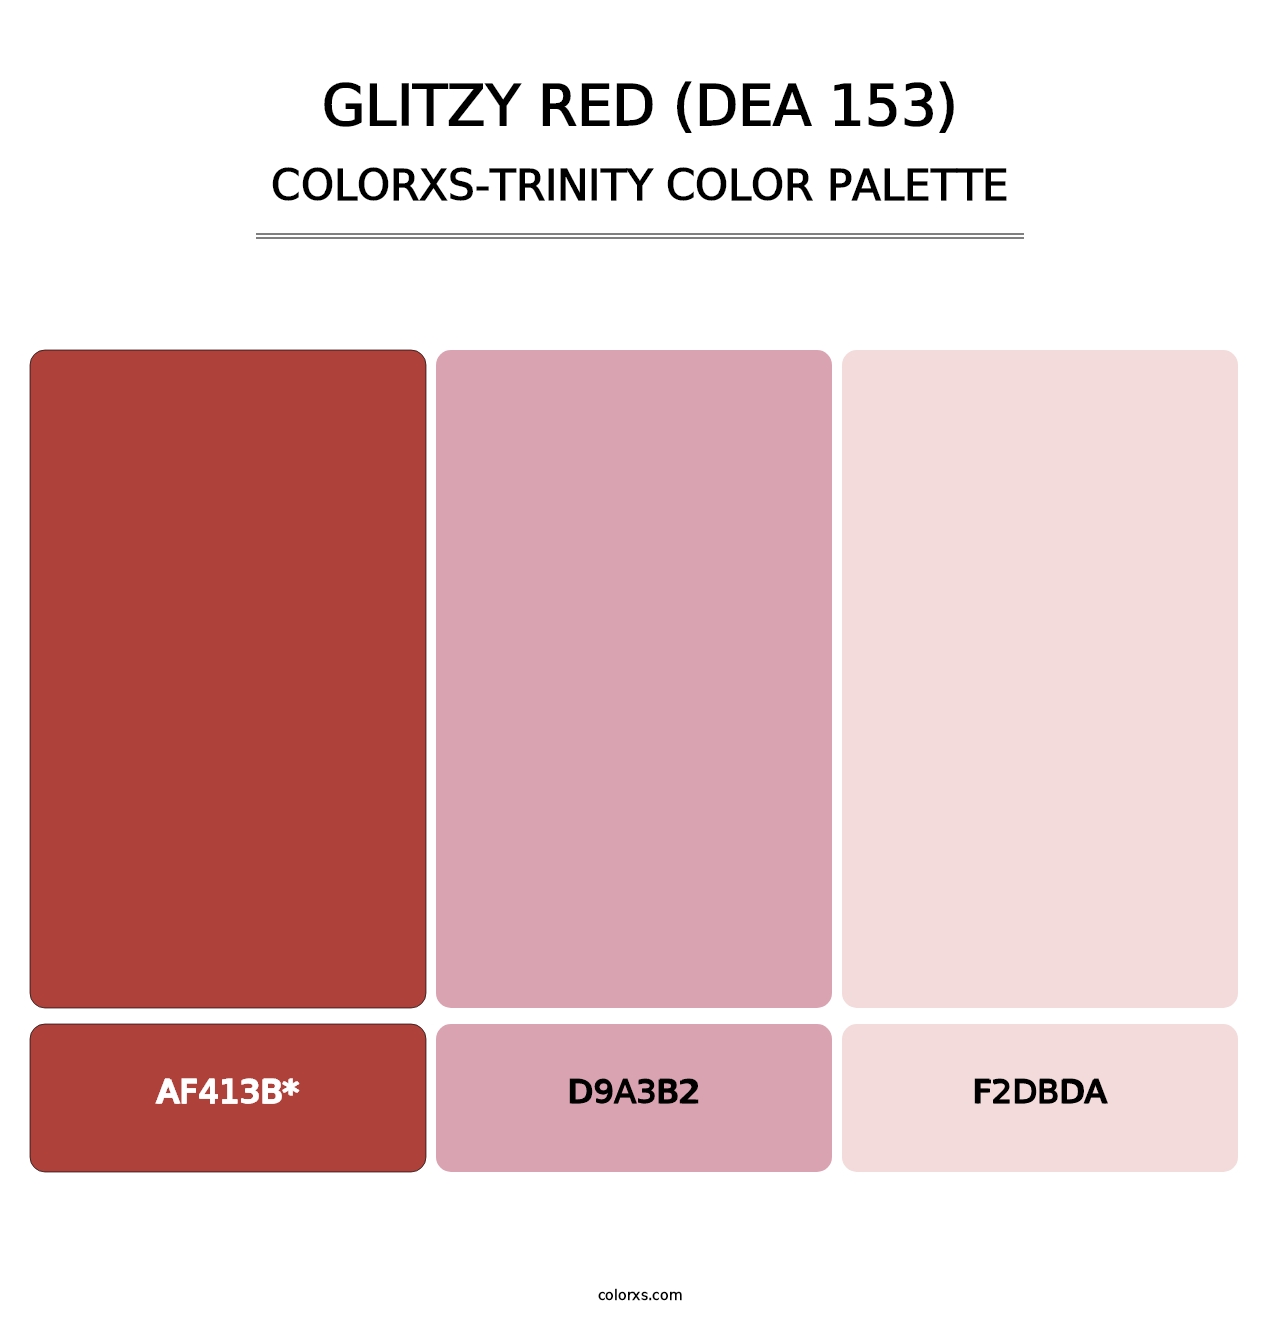 Glitzy Red (DEA 153) - Colorxs Trinity Palette